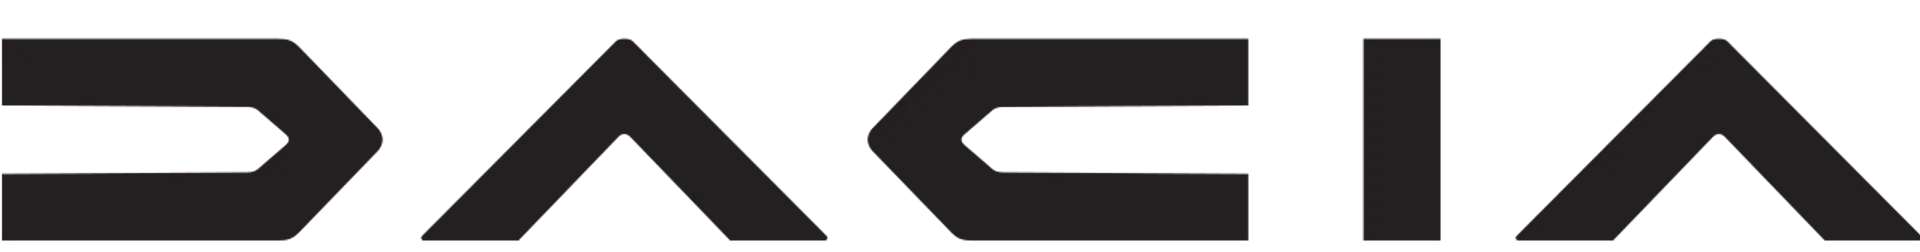 DACIA logo